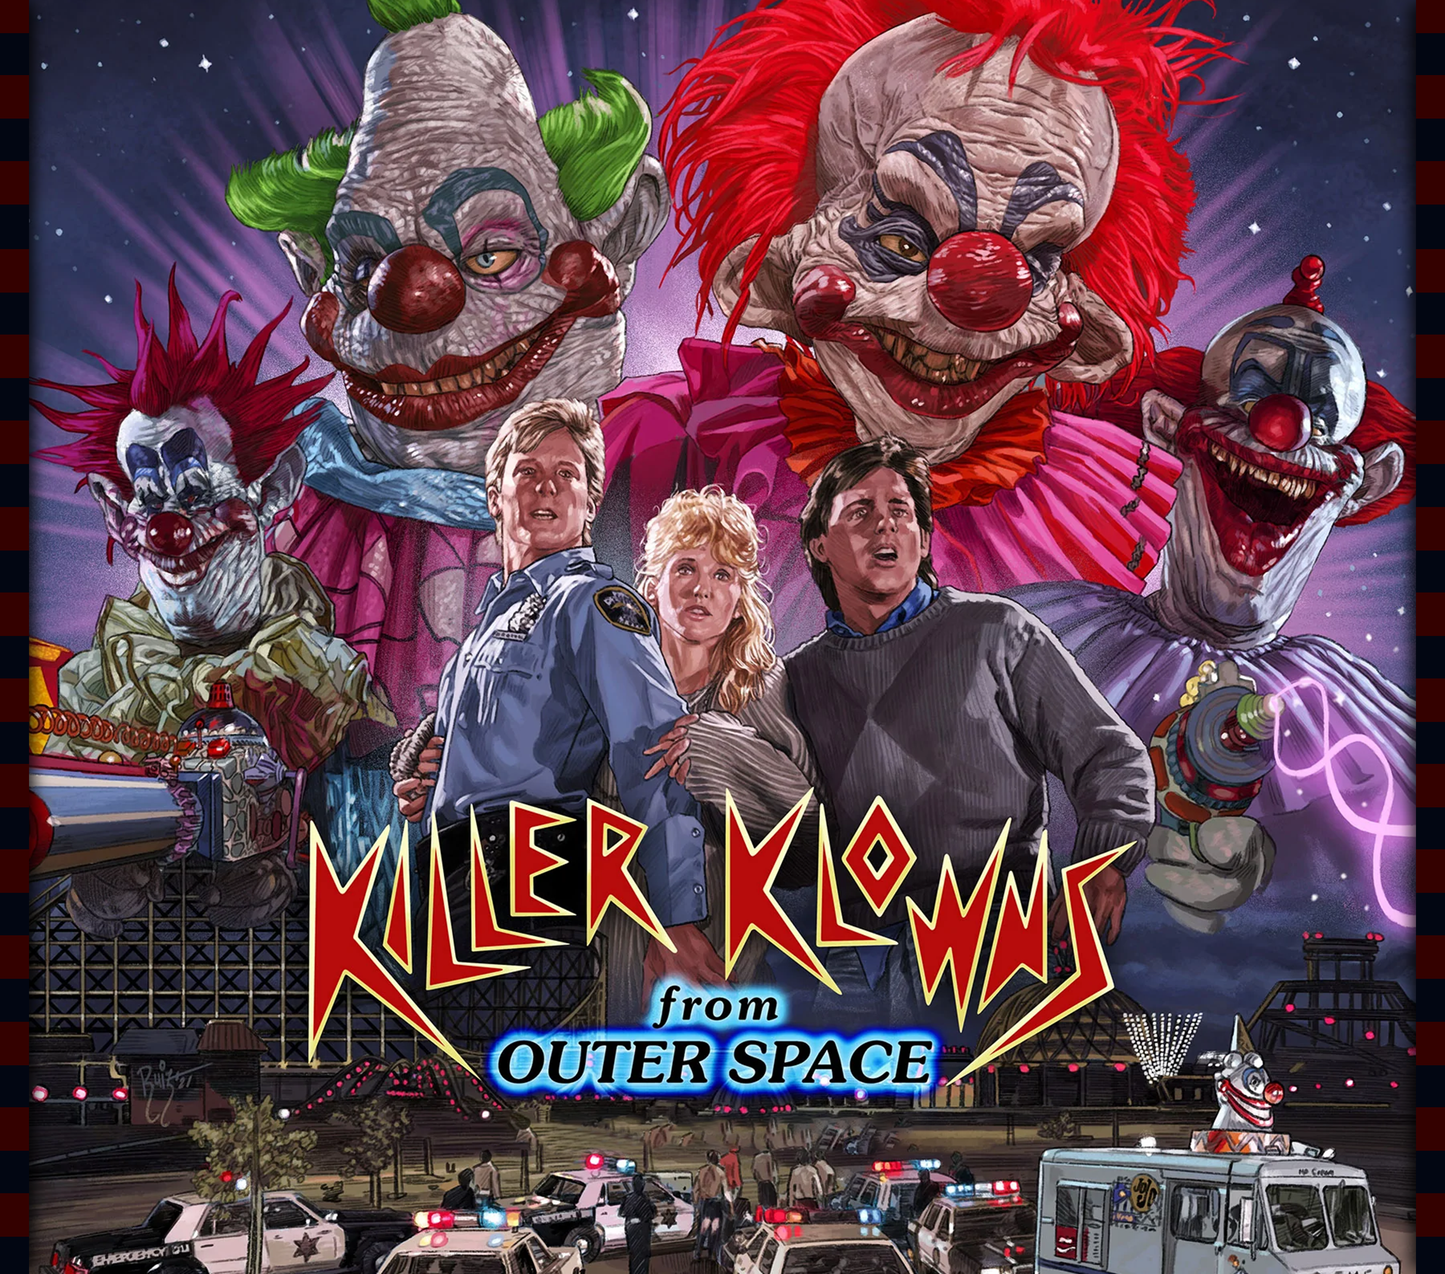 Killer Klowns - 20oz Tumbler